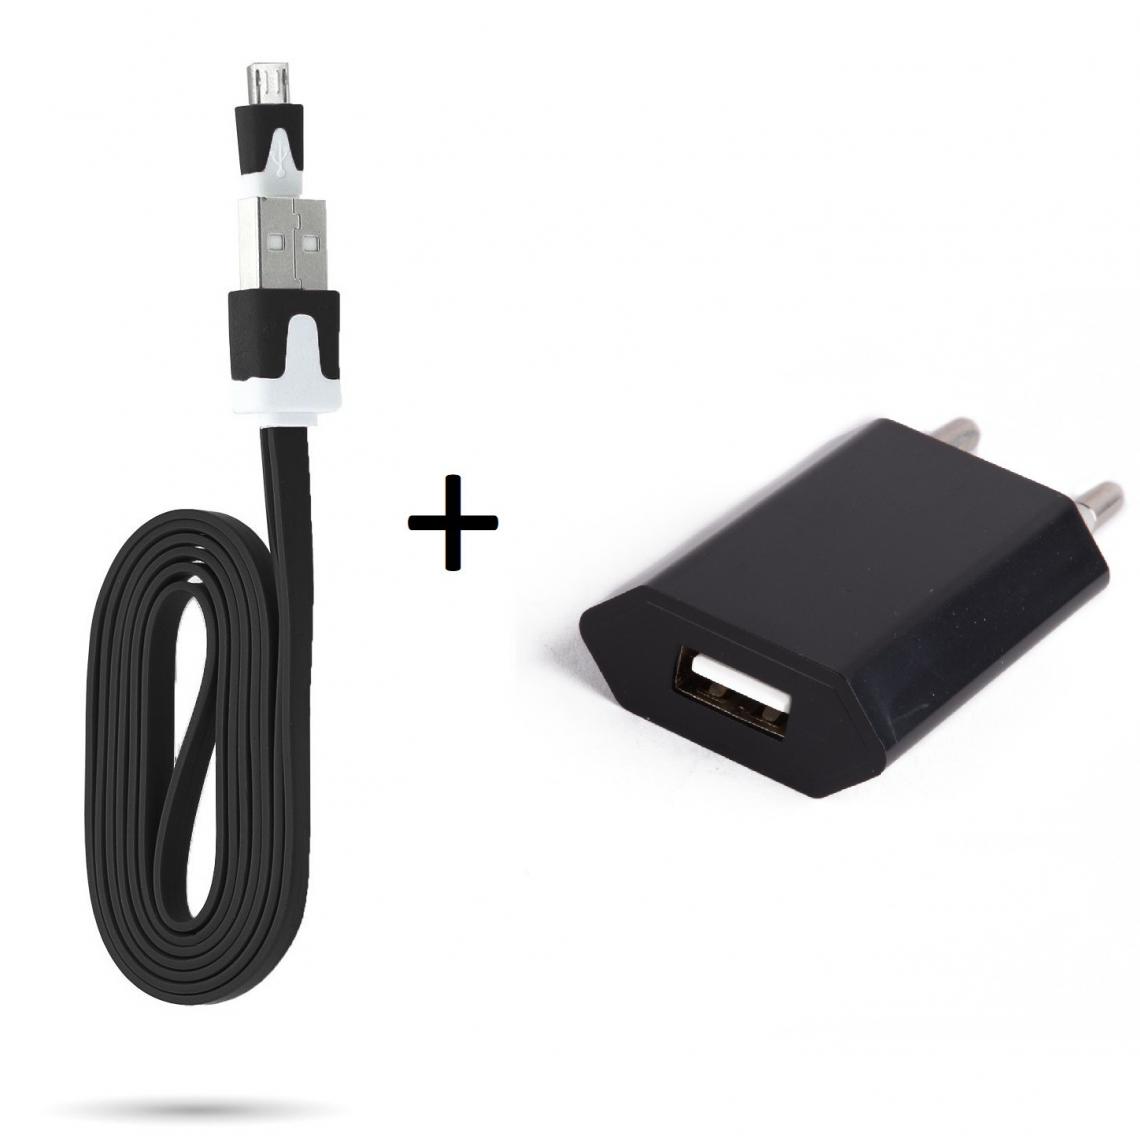 Shot - Cable Noodle 1m Chargeur + Prise Secteur pour WIKO View 4 Lite Smartphone Micro USB Murale Pack Android (NOIR) - Chargeur secteur téléphone